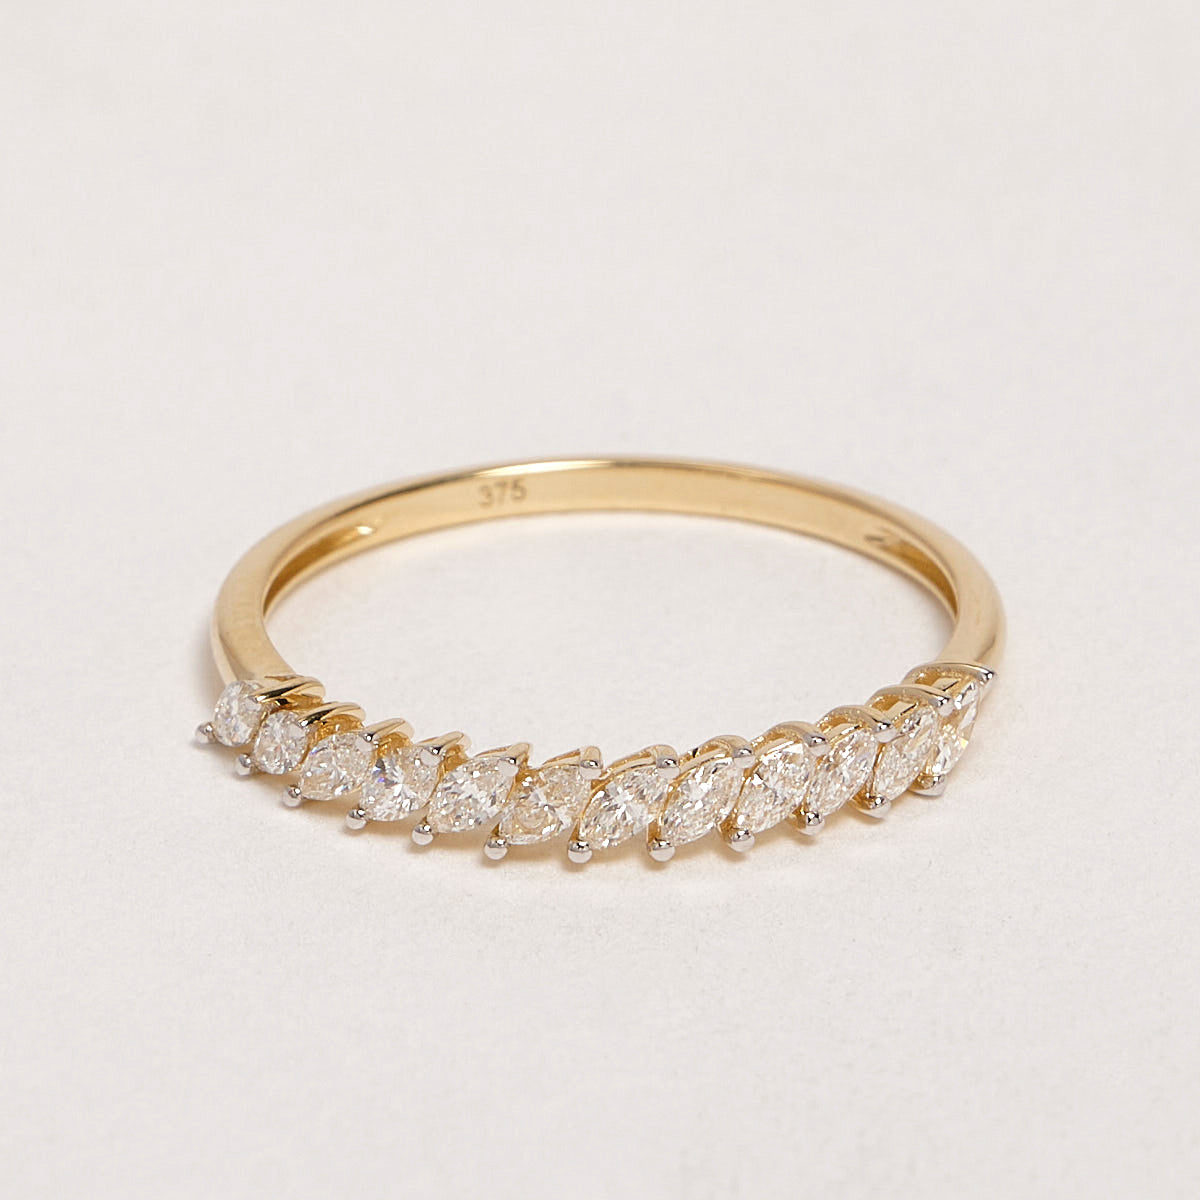 Karis 9ct Yellow Gold Diamond Ring